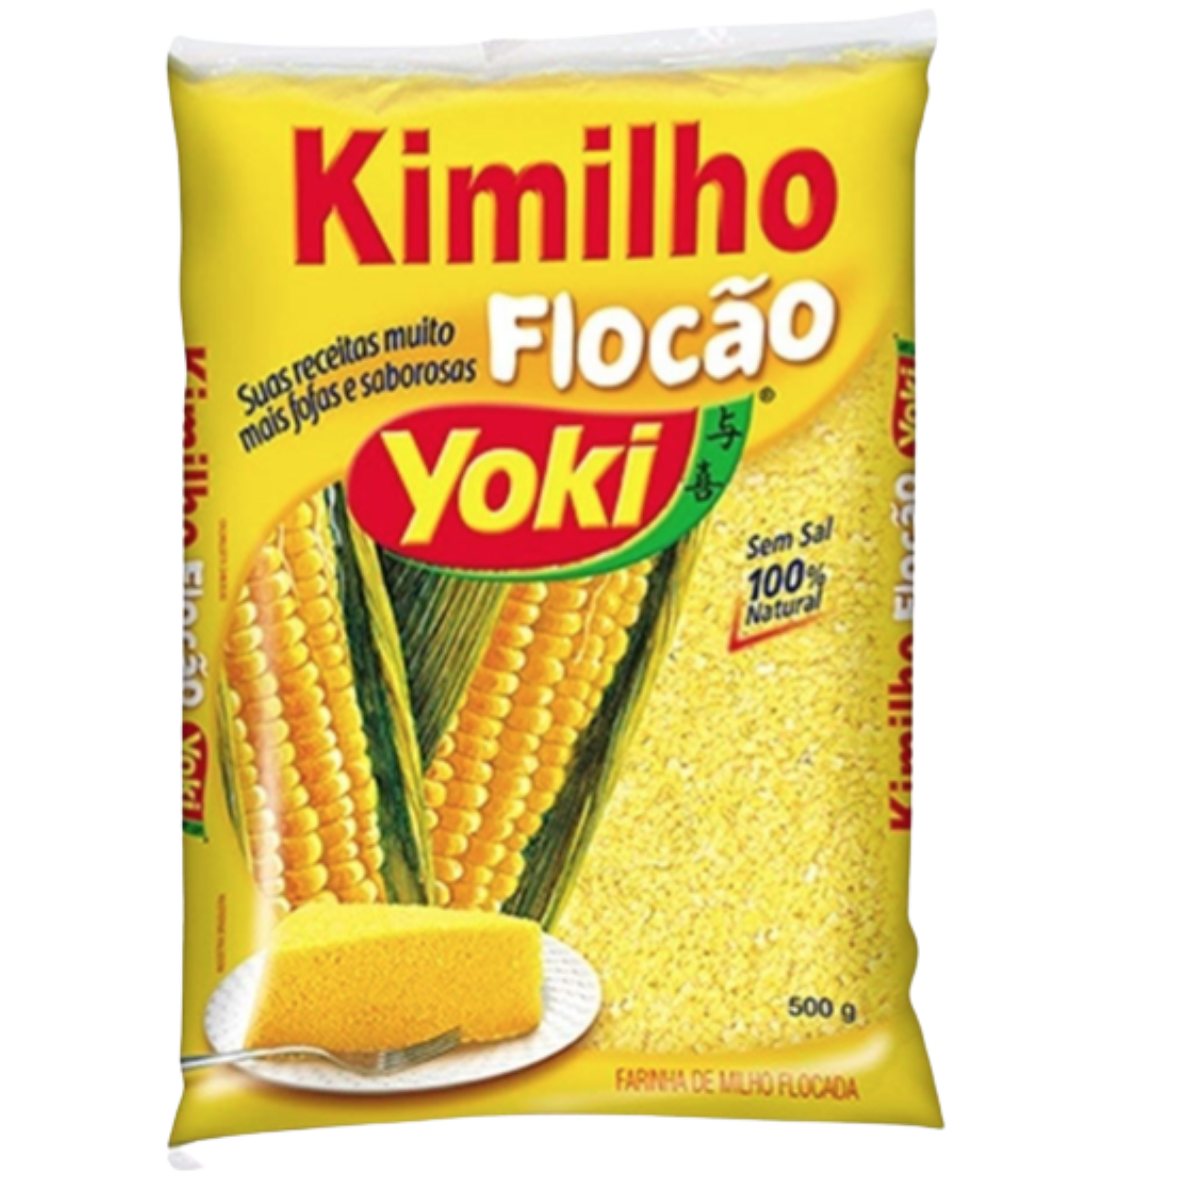 Farinha de Milho em Flocos Yoki Kimilho 500g